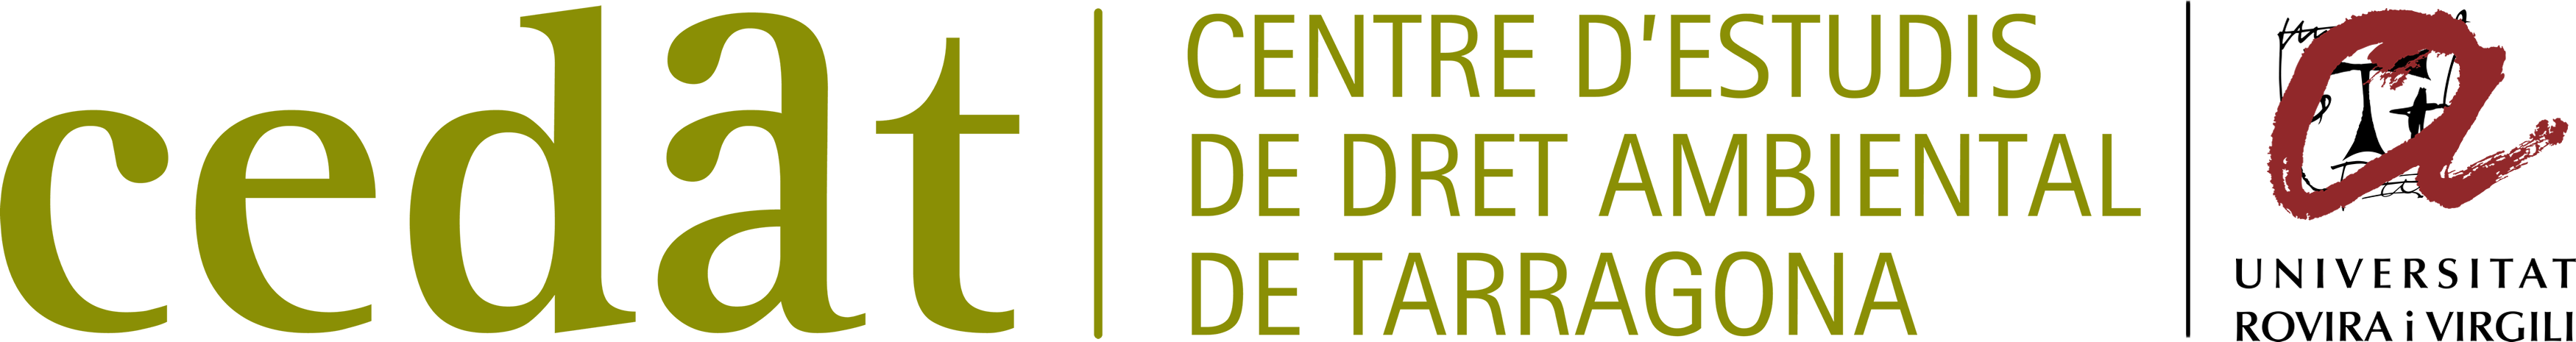 Centre d'Estudis de Dret Ambiental de Tarragona (CEDAT)